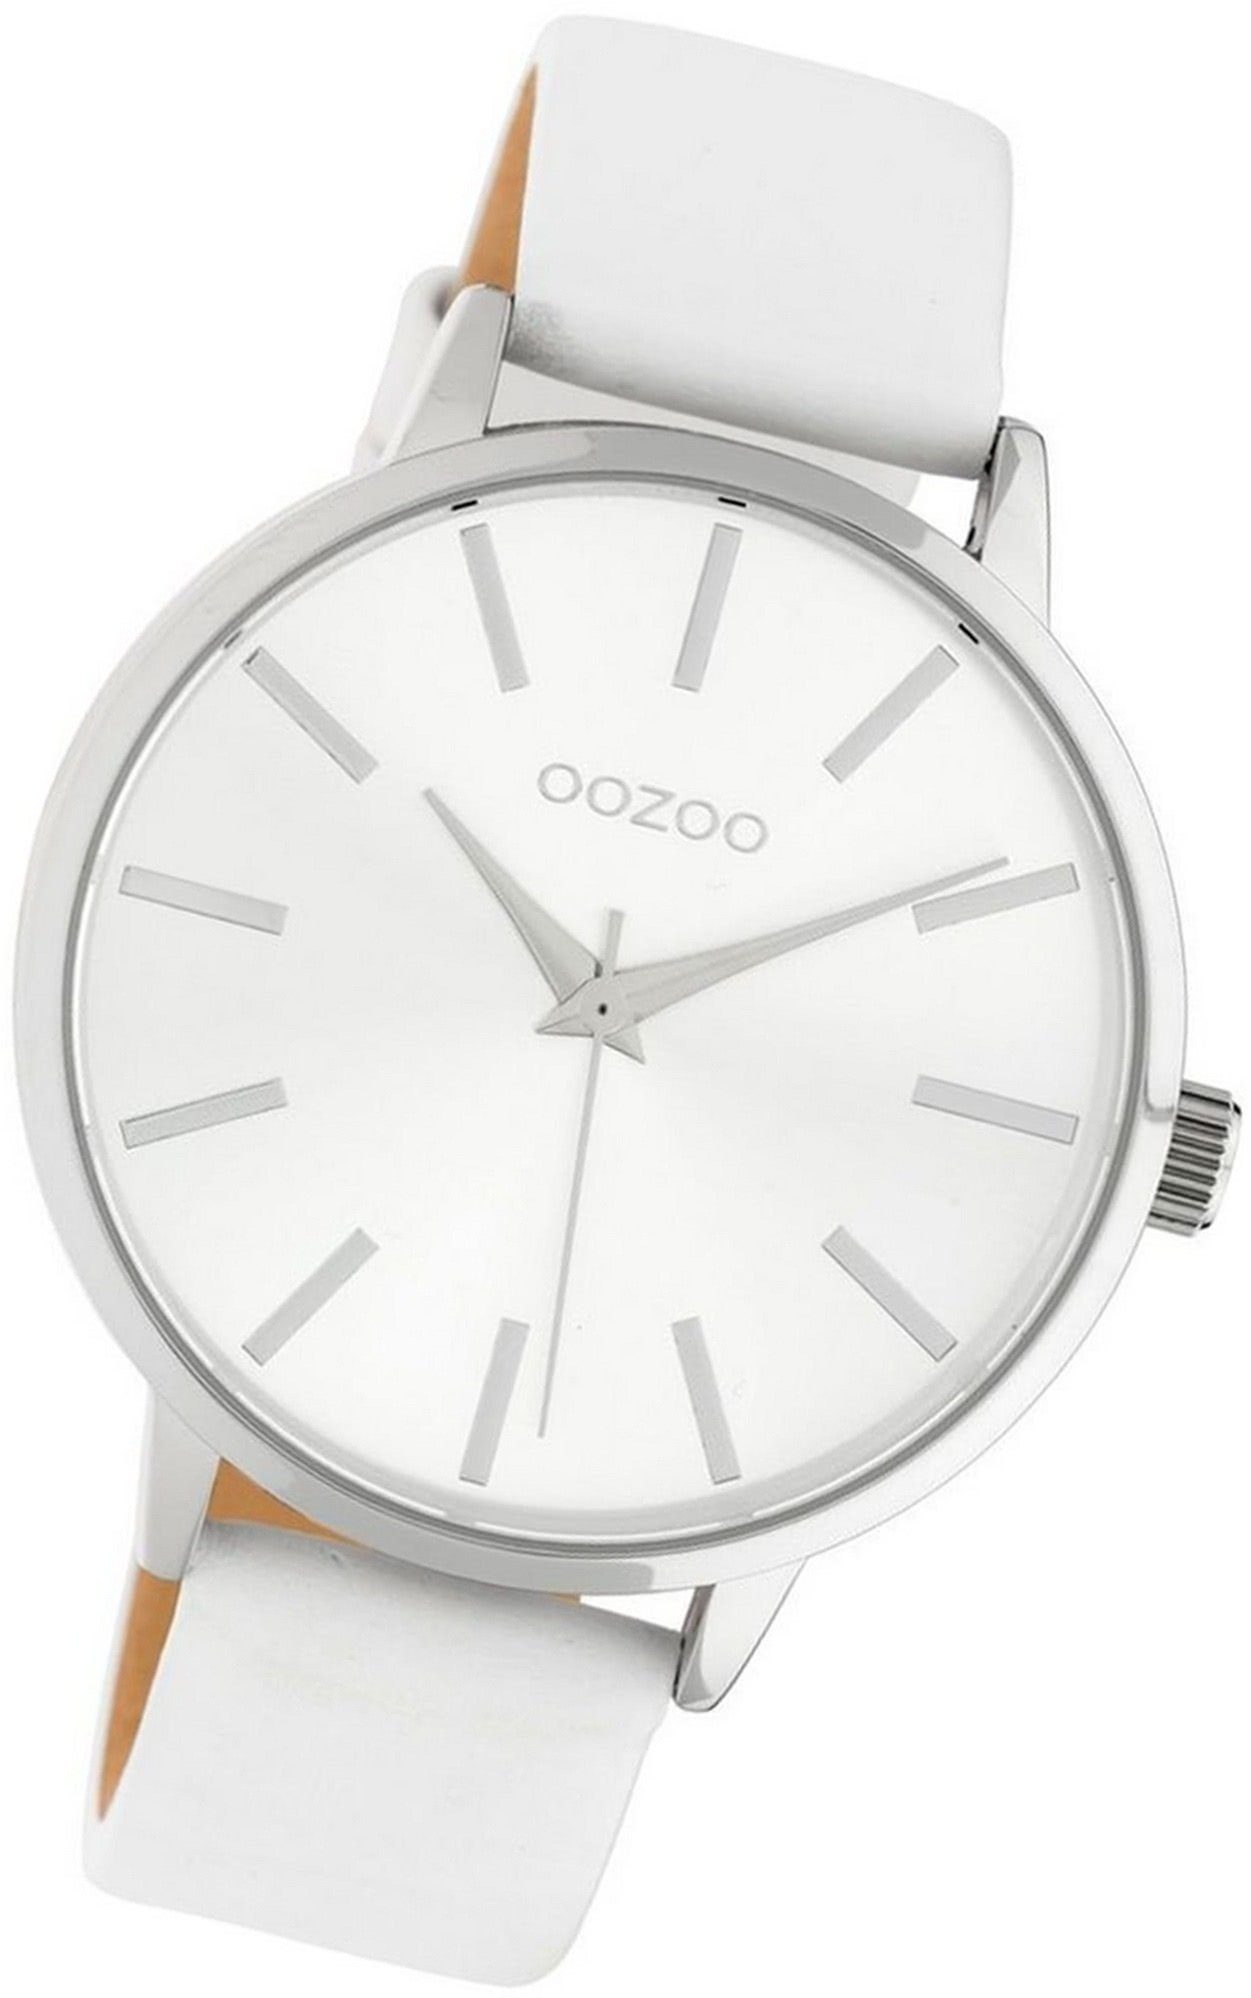 OOZOO Quarzuhr Oozoo Leder Damen Uhr C10610 Analog, Damenuhr Lederarmband weiß, rundes Gehäuse, groß (ca. 42mm)